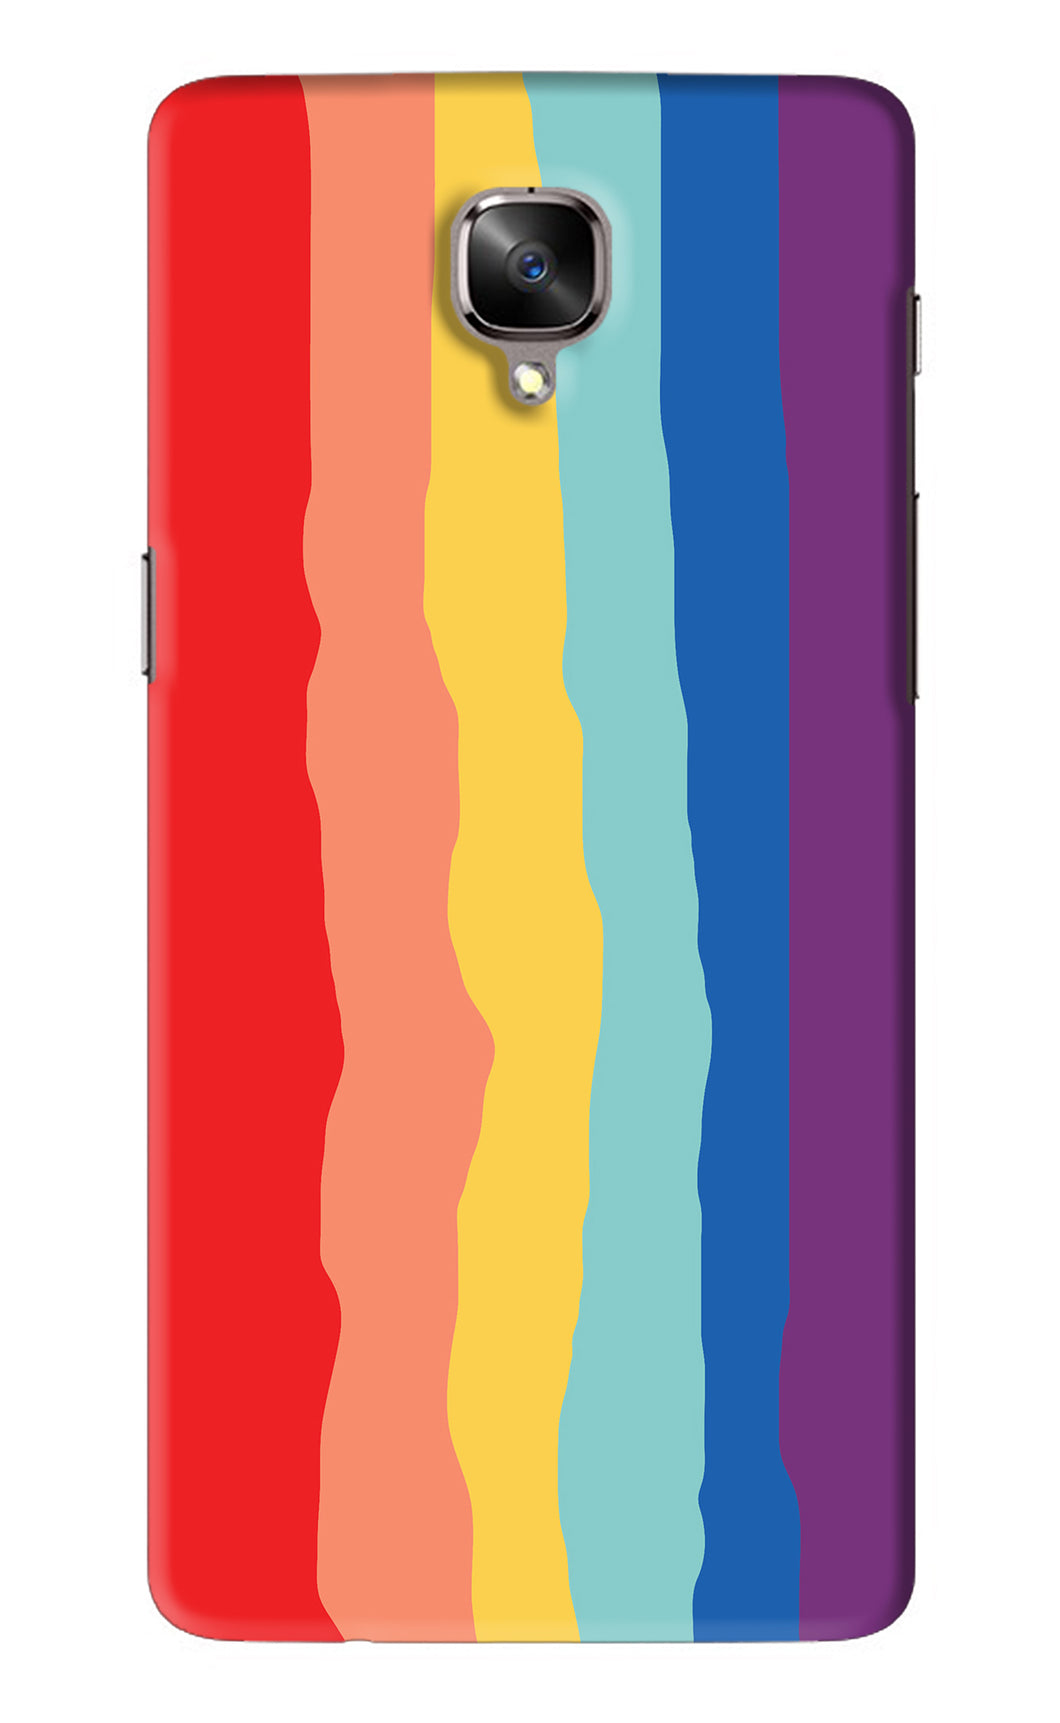 Rainbow OnePlus 3 Back Skin Wrap